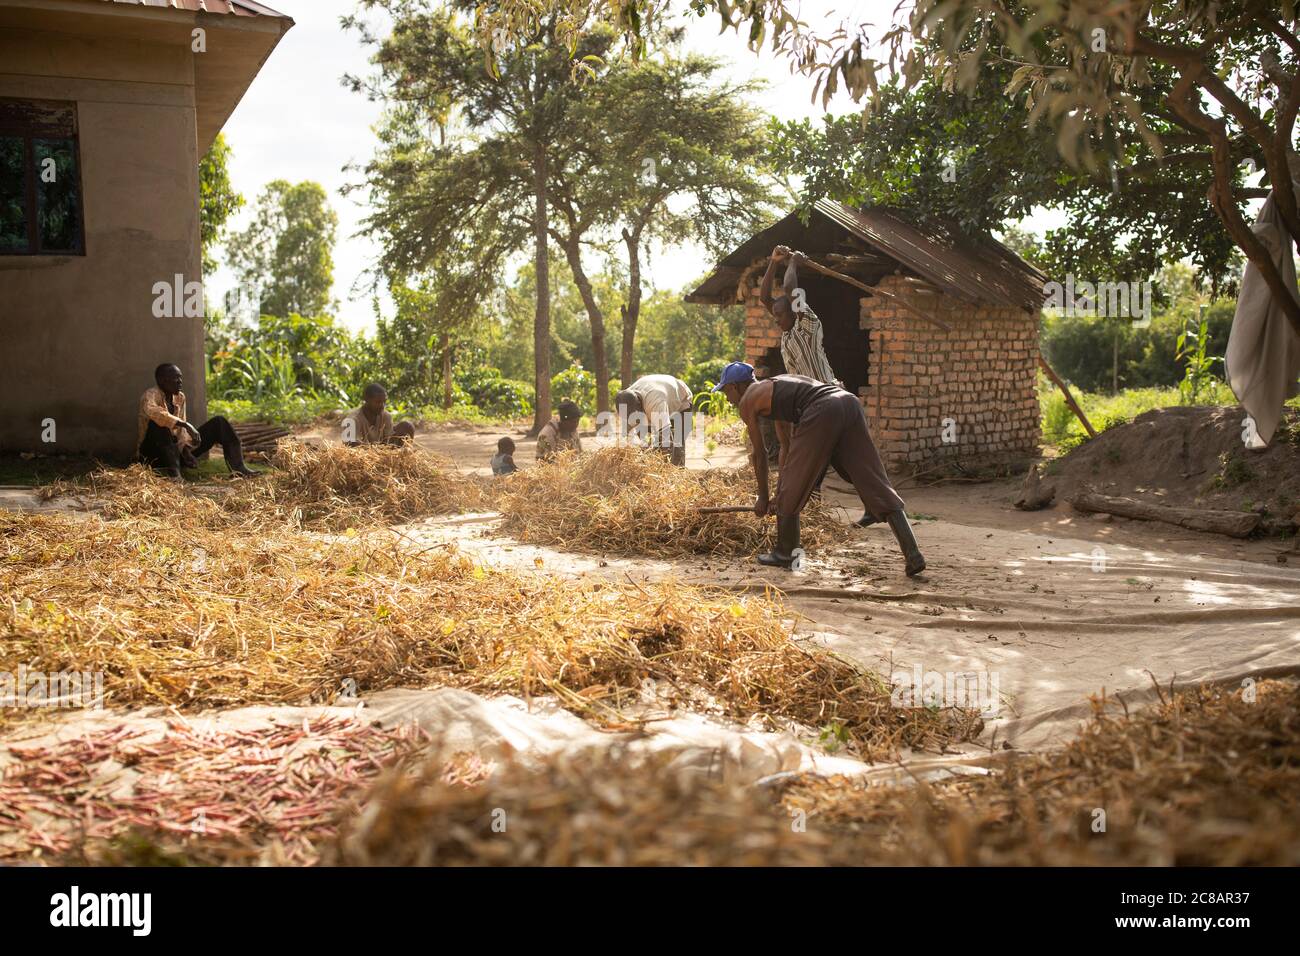 Gli agricoltori trebbiano il loro raccolto di fagioli battendo i bacelli secchi con un grande bastone in tandem uno con l'altro nel distretto rurale di Lyantonde, Uganda, Africa orientale. Foto Stock